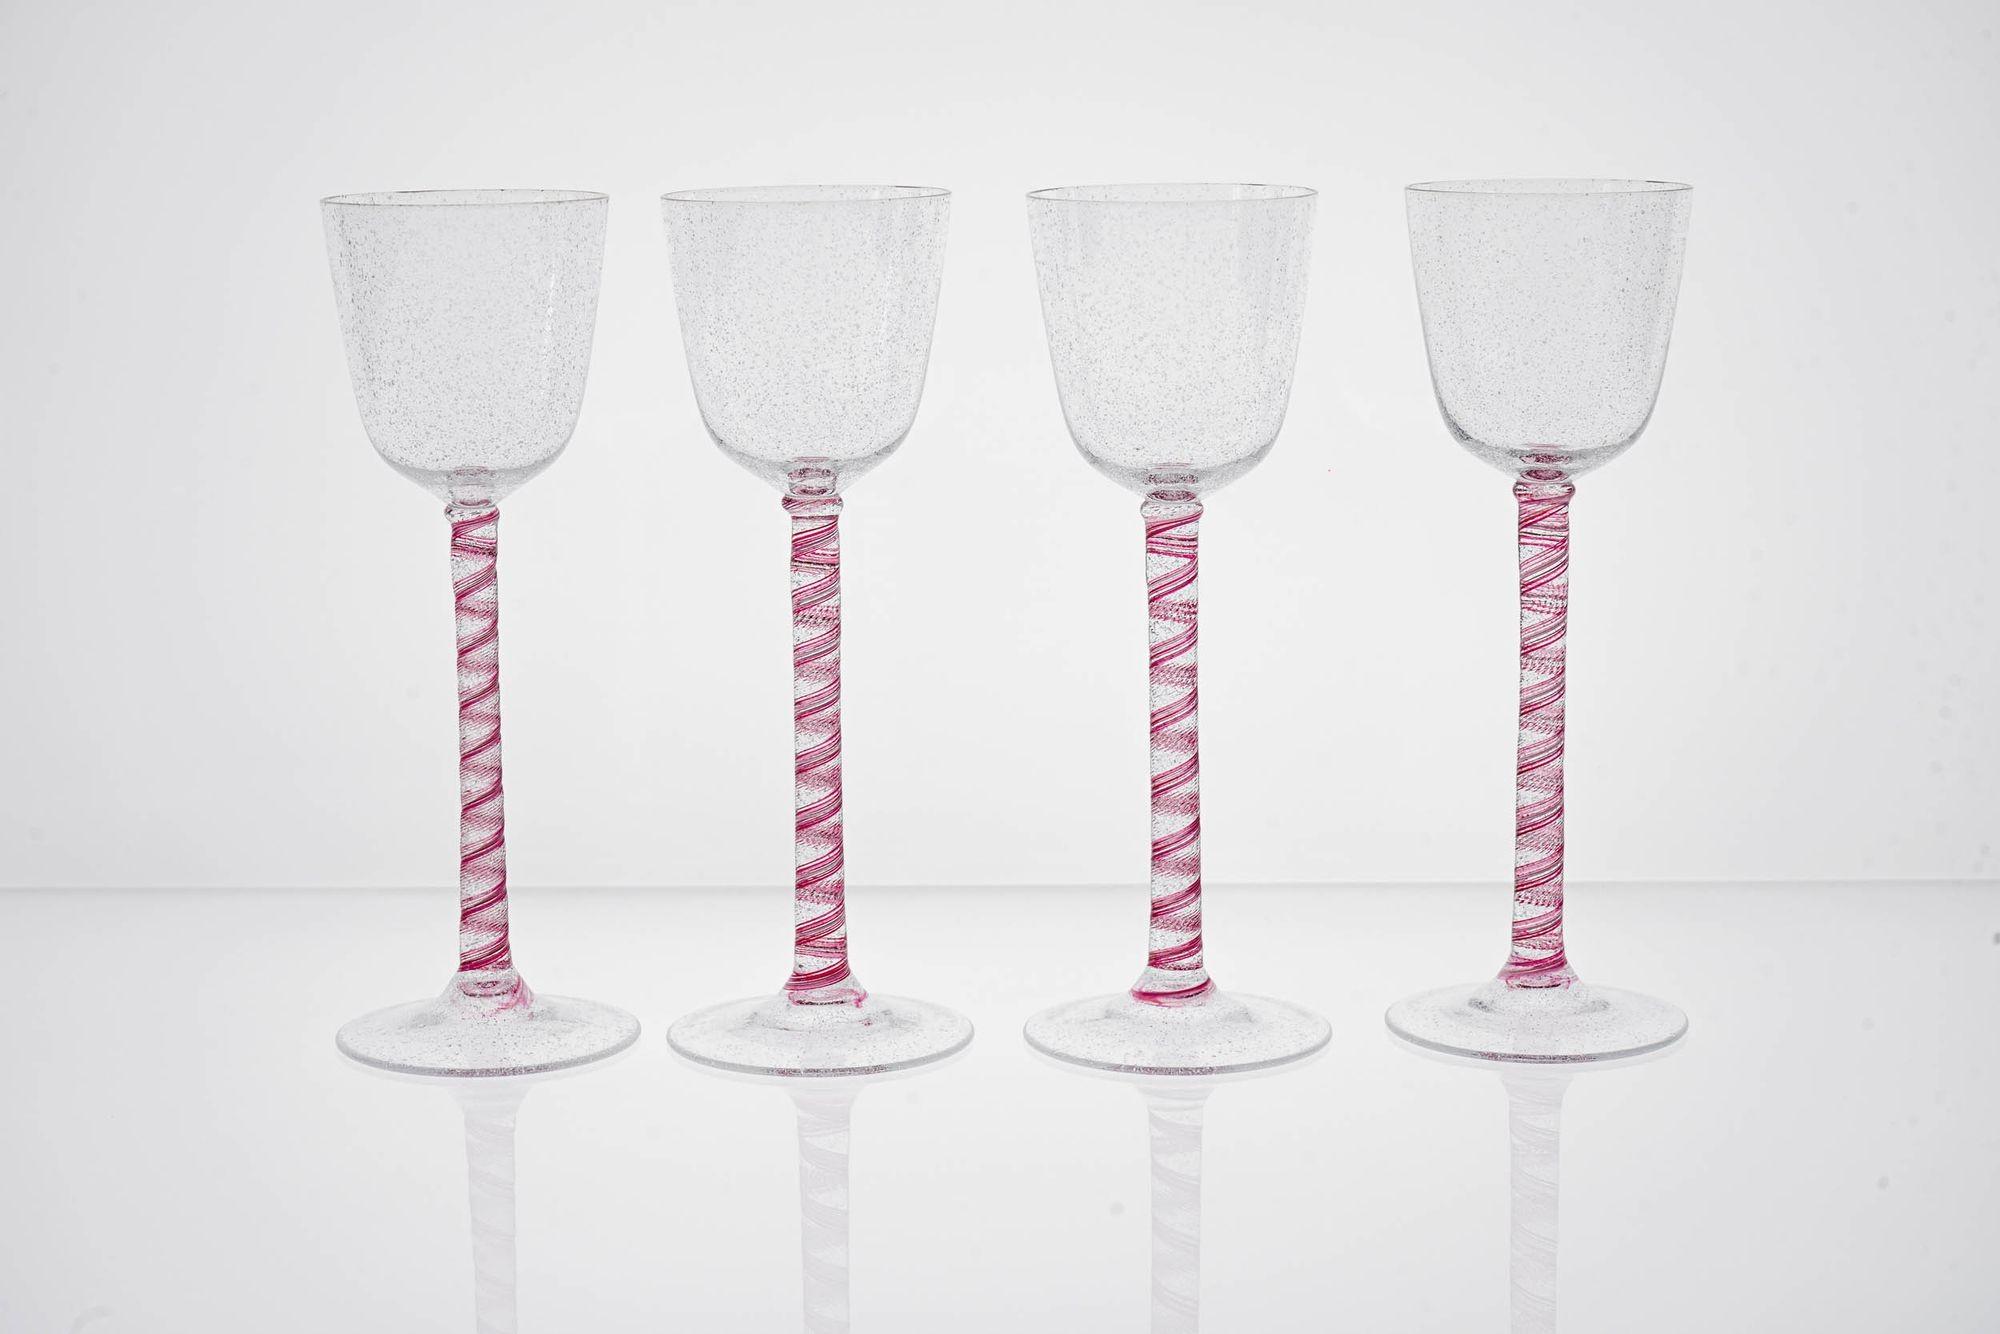 Exceptionnel ensemble de verres à pied Cenedese.
Cet ensemble de verres à pied, qui ne peut être répété, reproduit le verre à pied torsadé classique de l'époque géorgienne du XVIIIe siècle. La tige torsadée est en perles de rubis avec une seule